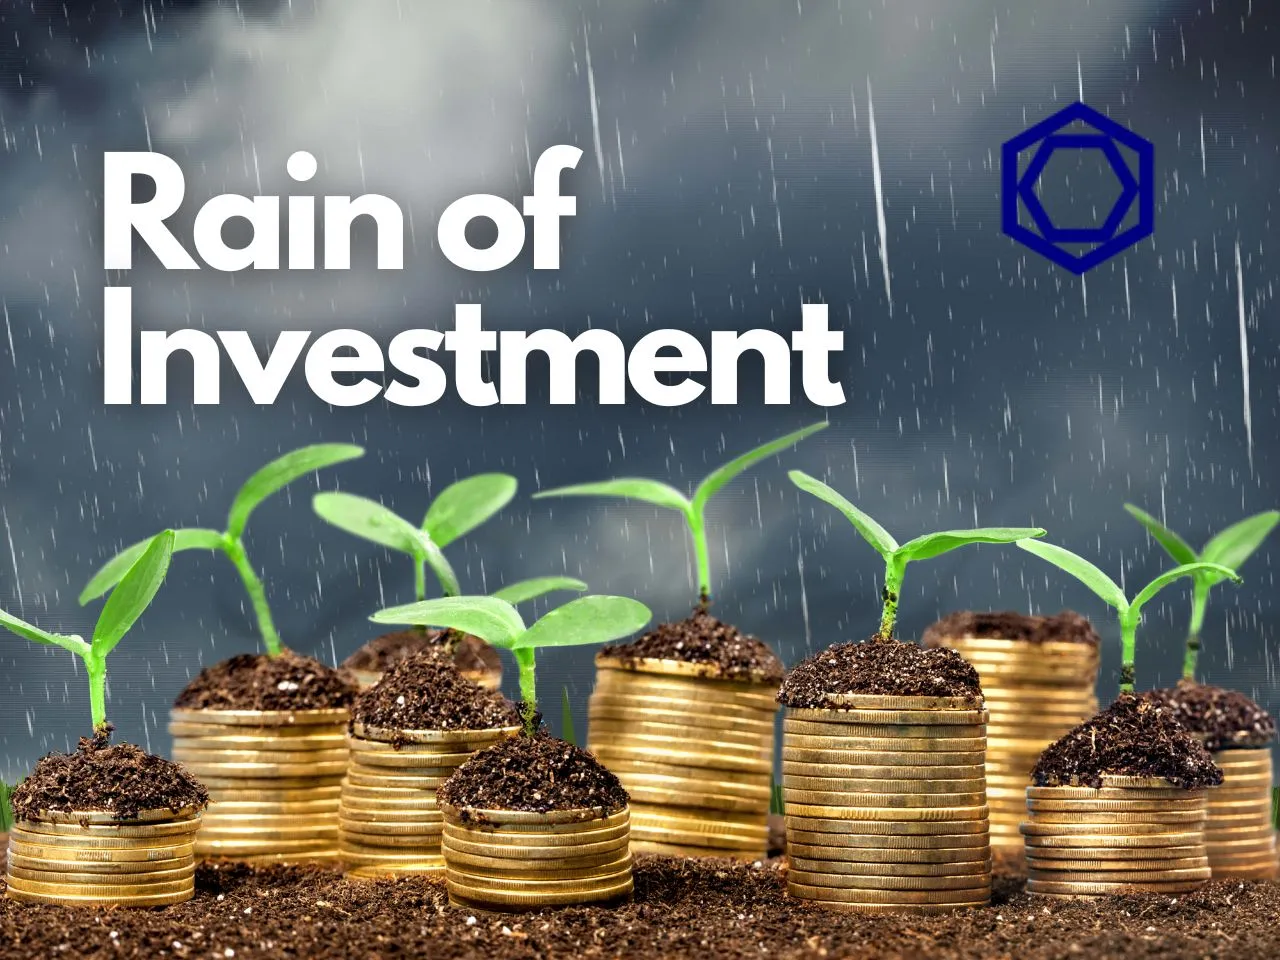 Rain of investment